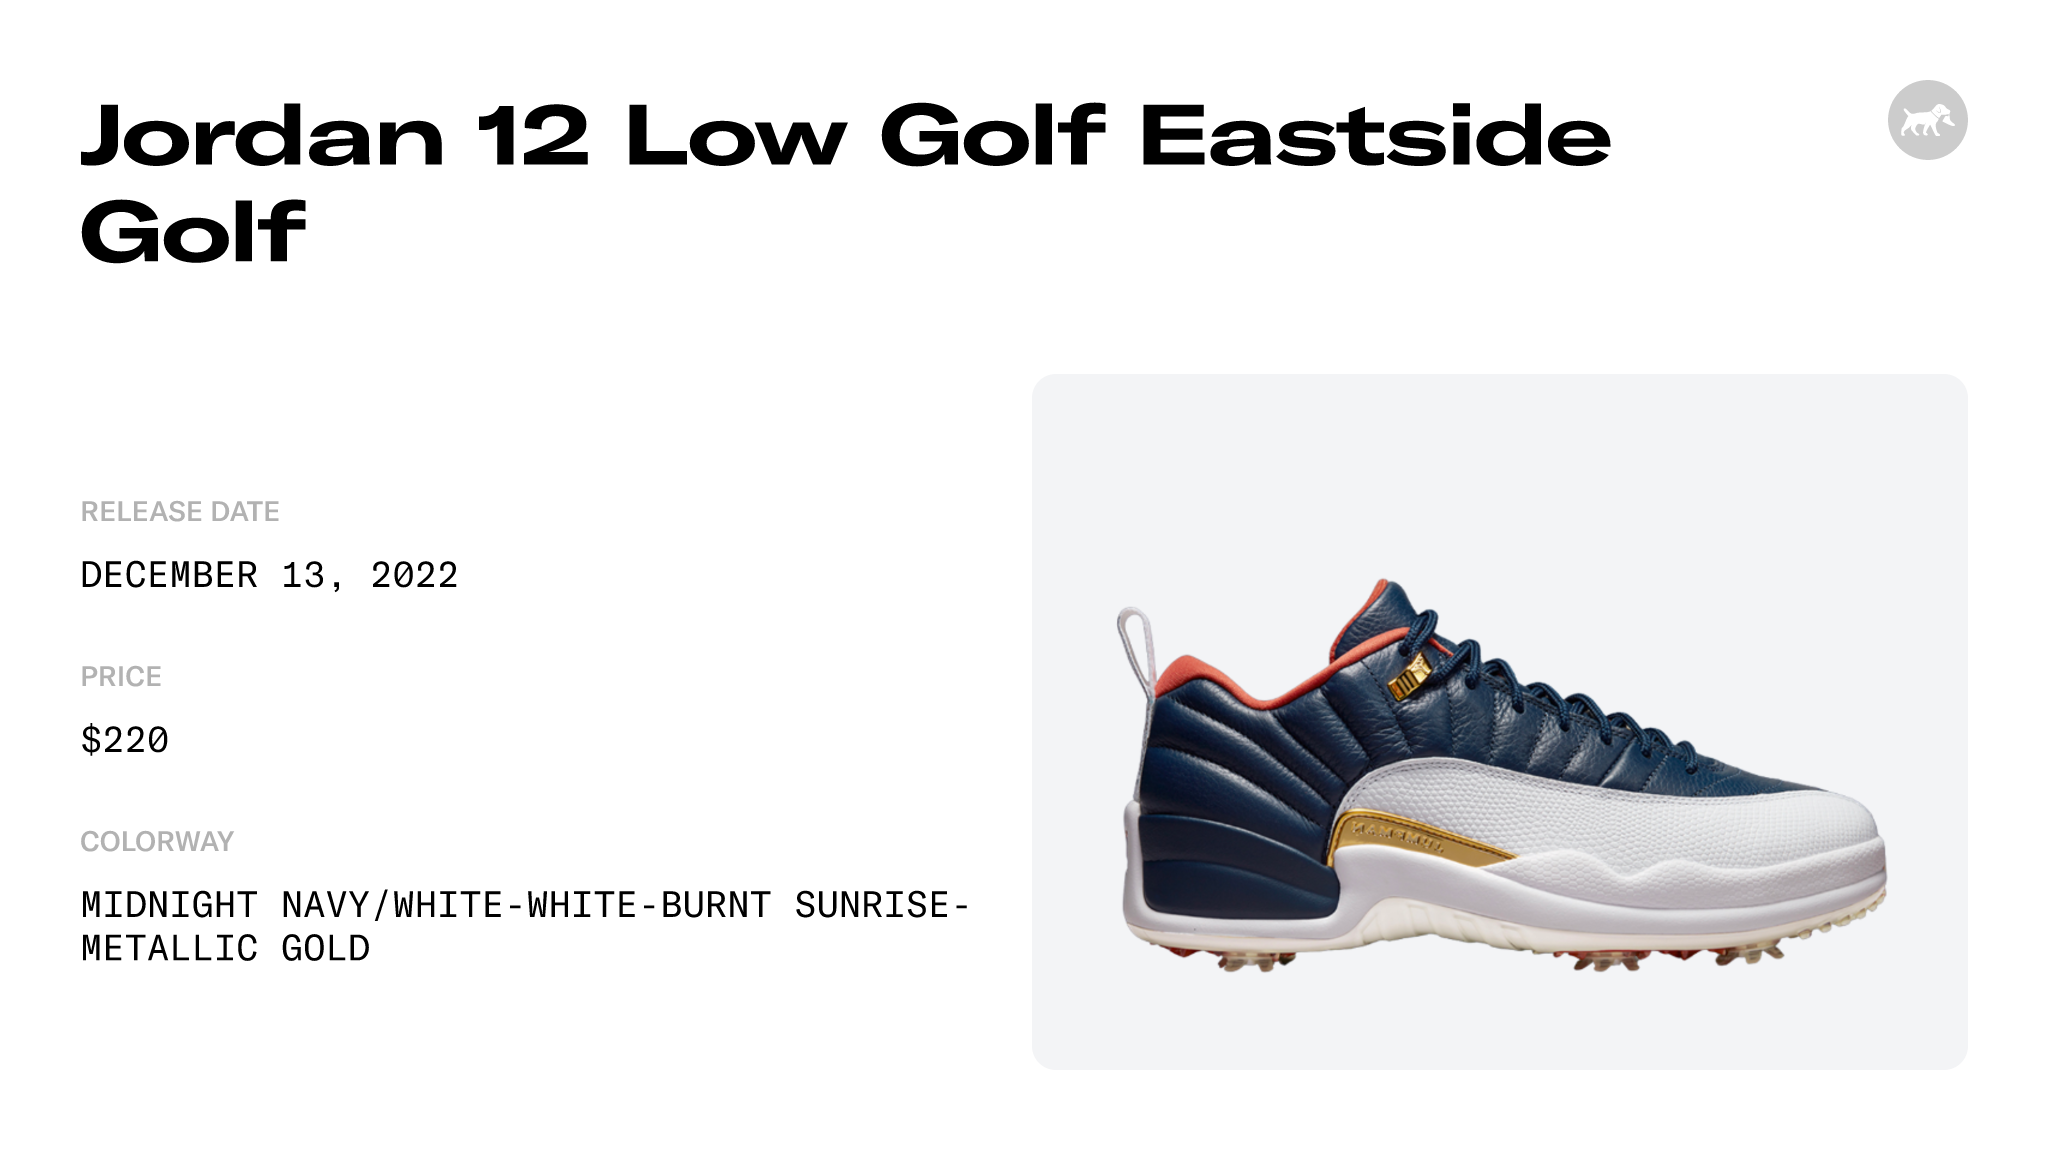 Eastside Golf Air Jordan 12 Release Date